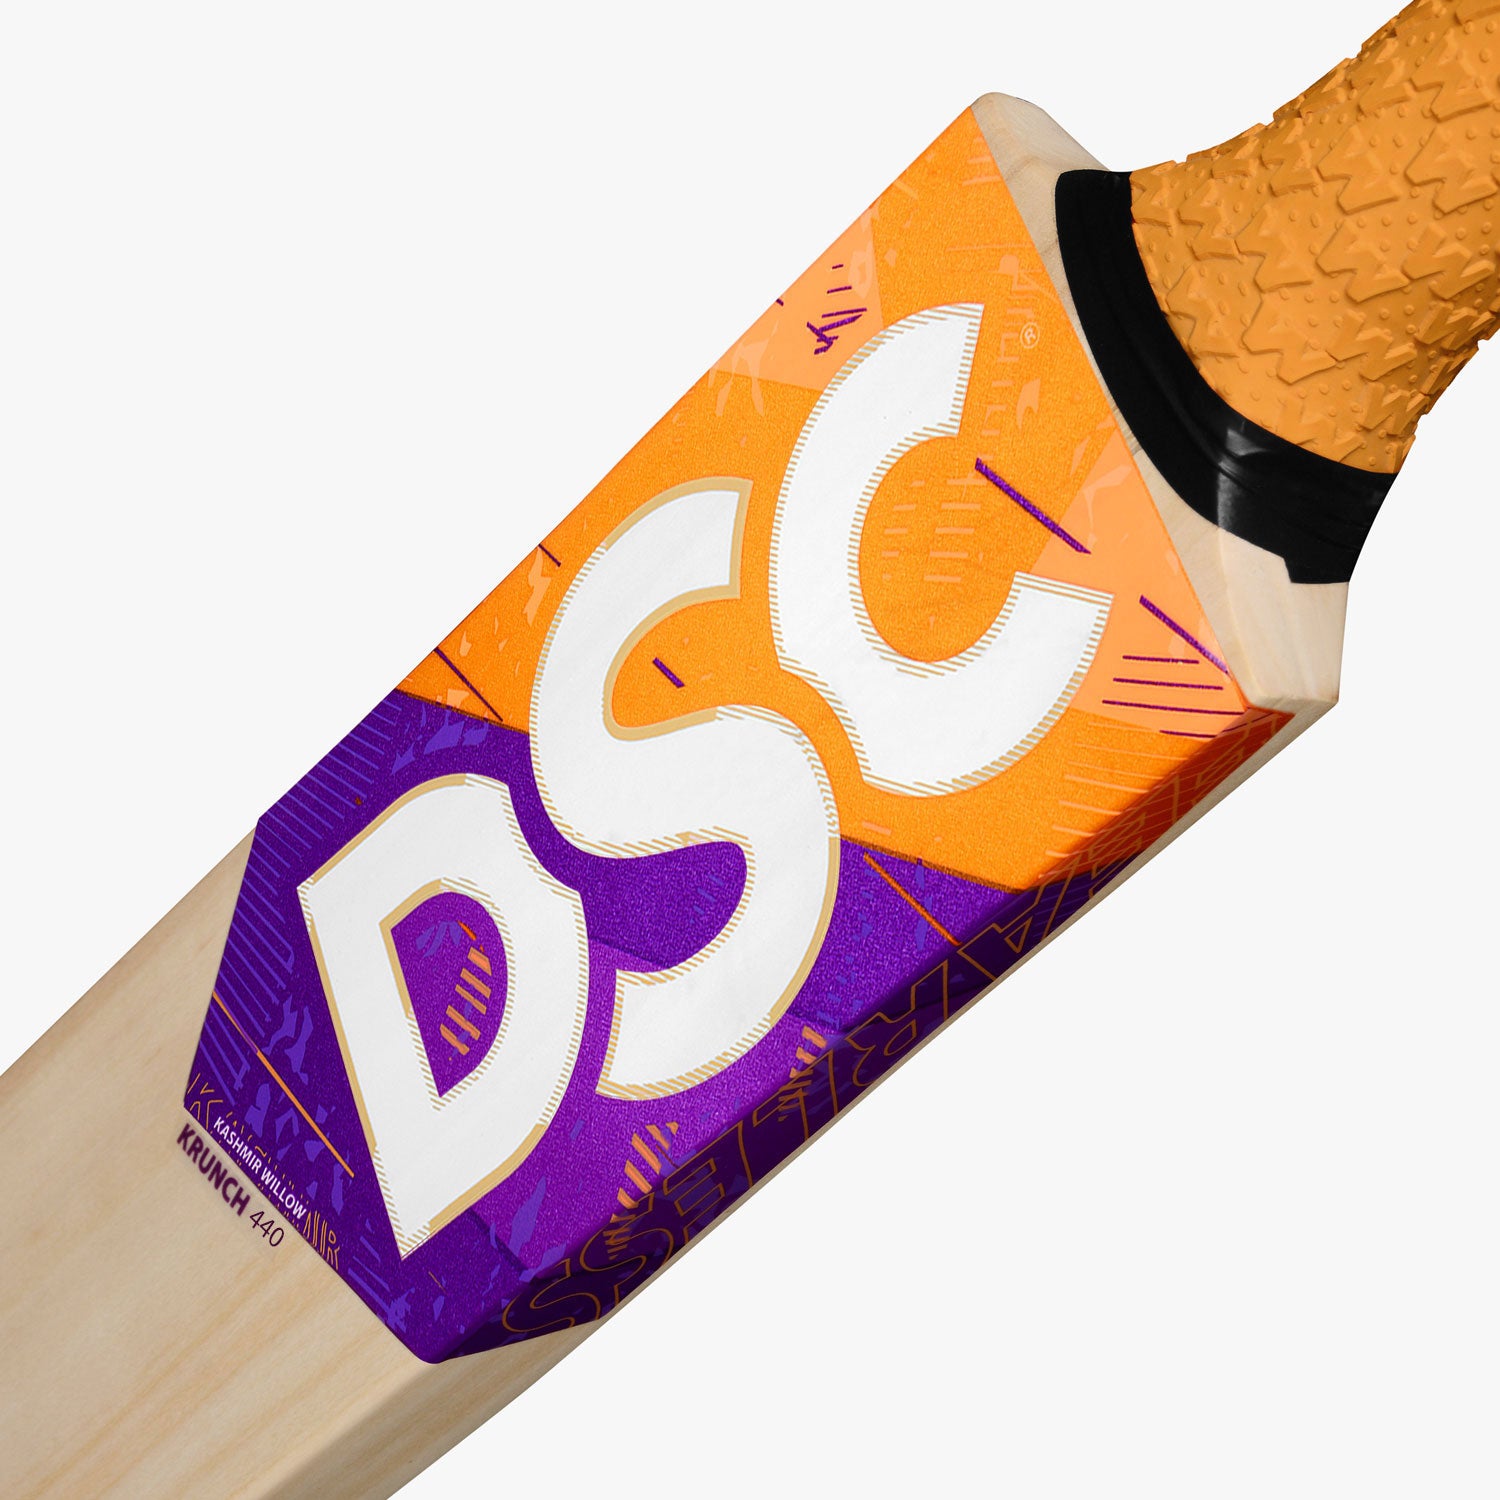 DSC Krunch 440 Junior Cricket Bat